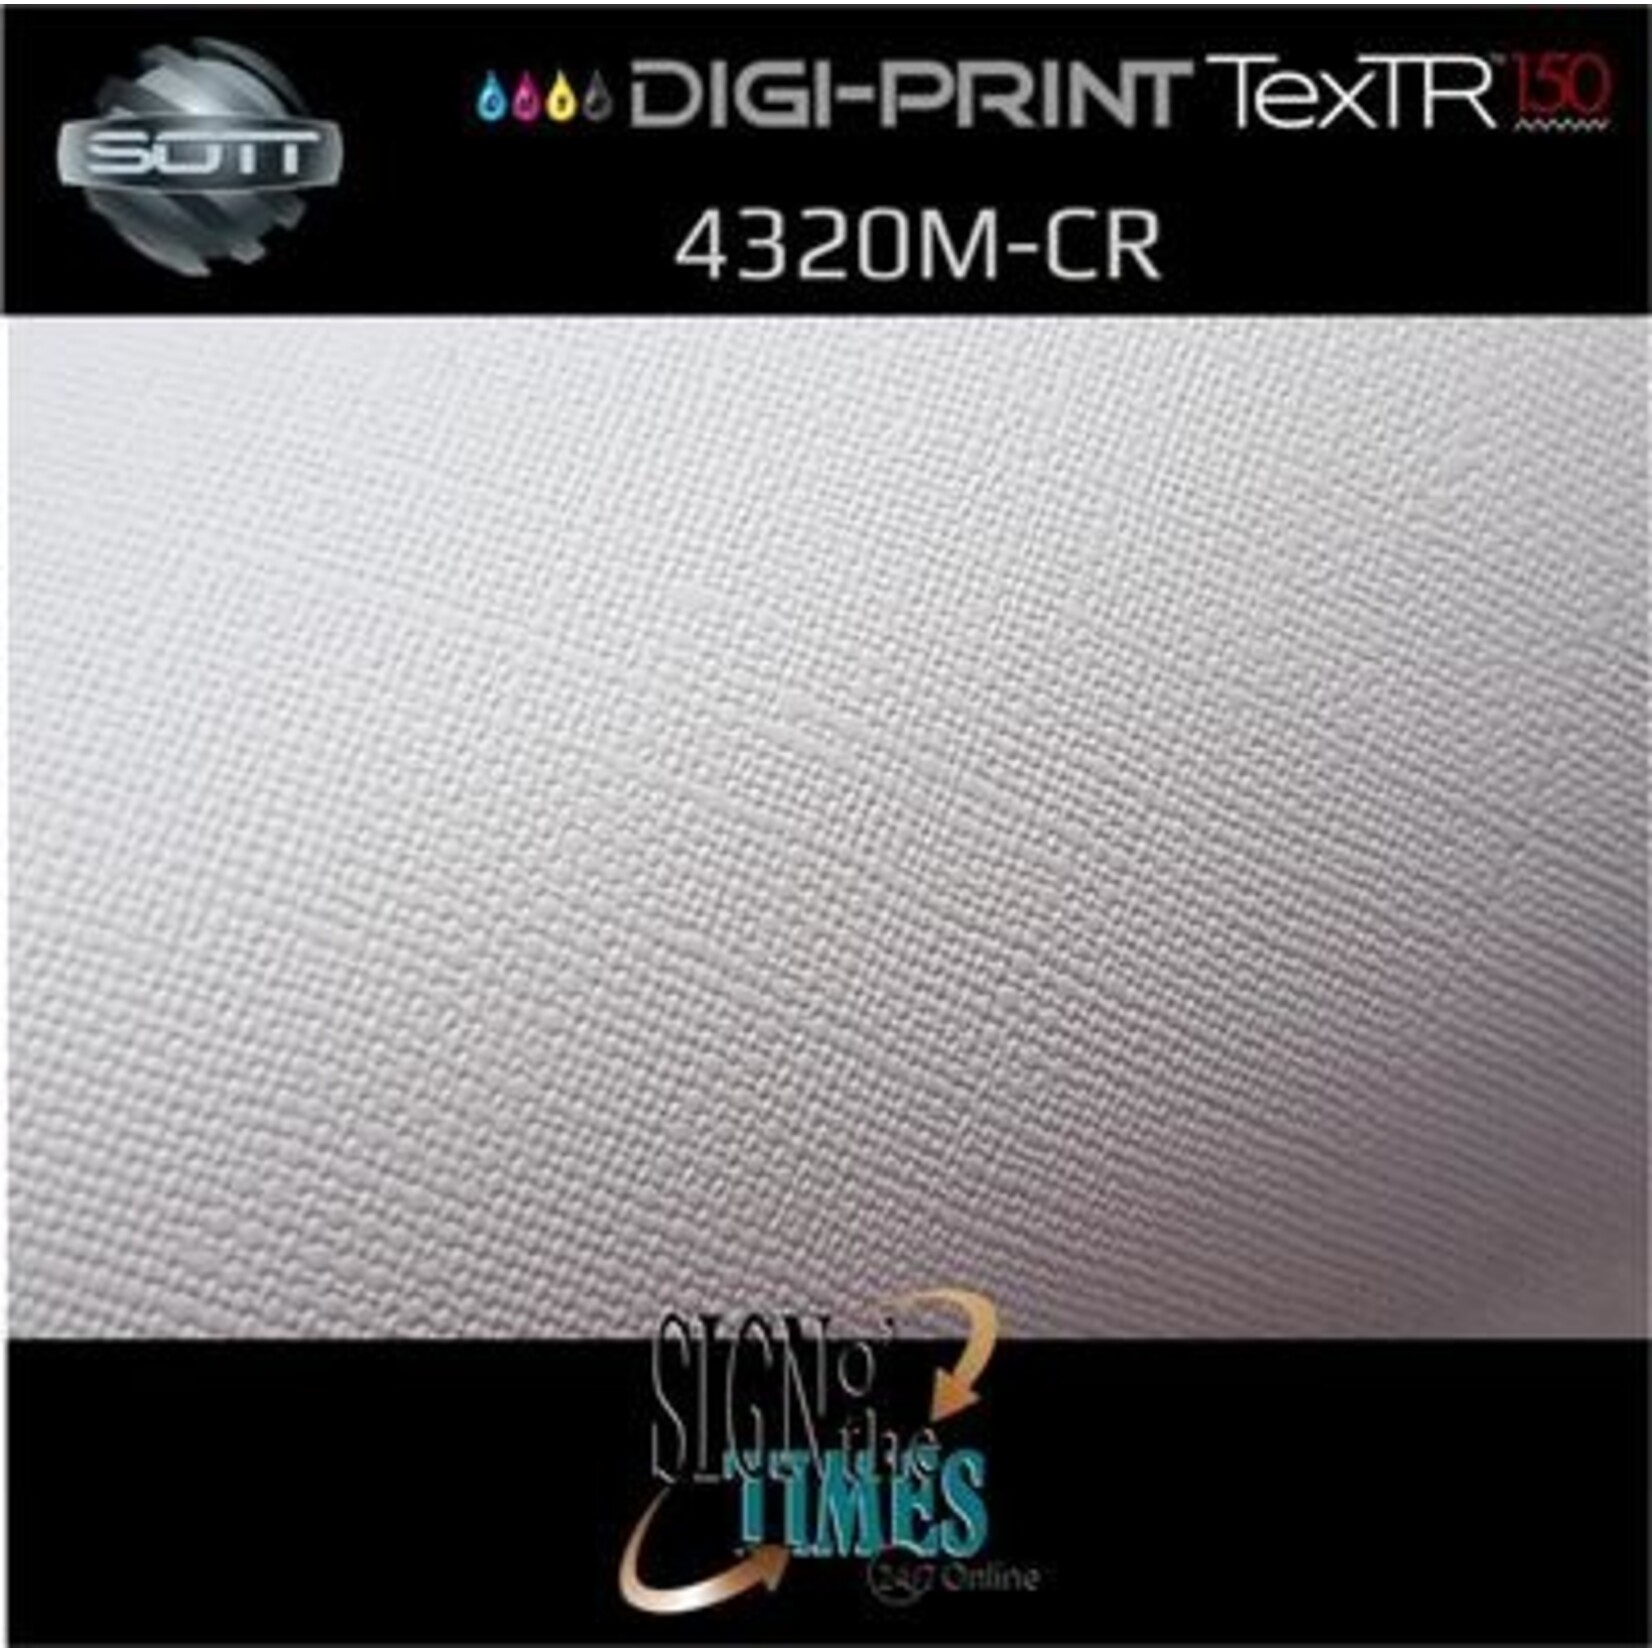 SOTT® DP-4320M-CR-137 DigiPrint TexTR150™ Canvas Wall-Folie Matt Weiß